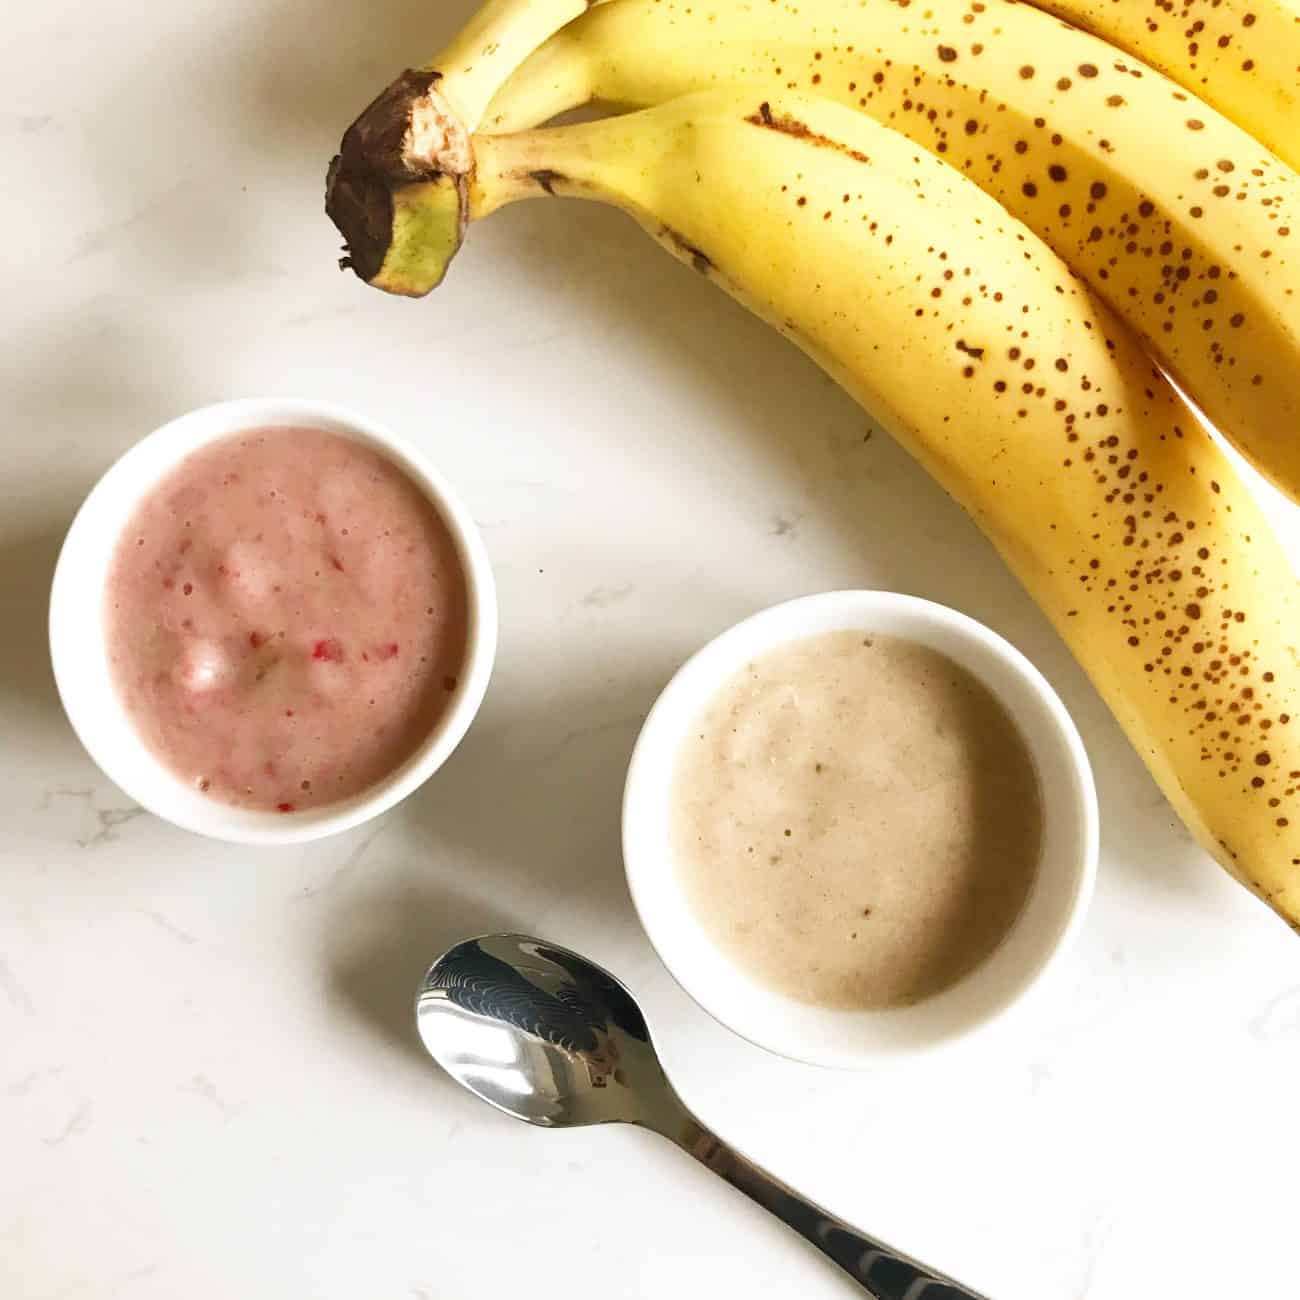 Strawberry and Banana ‘Nice Cream’